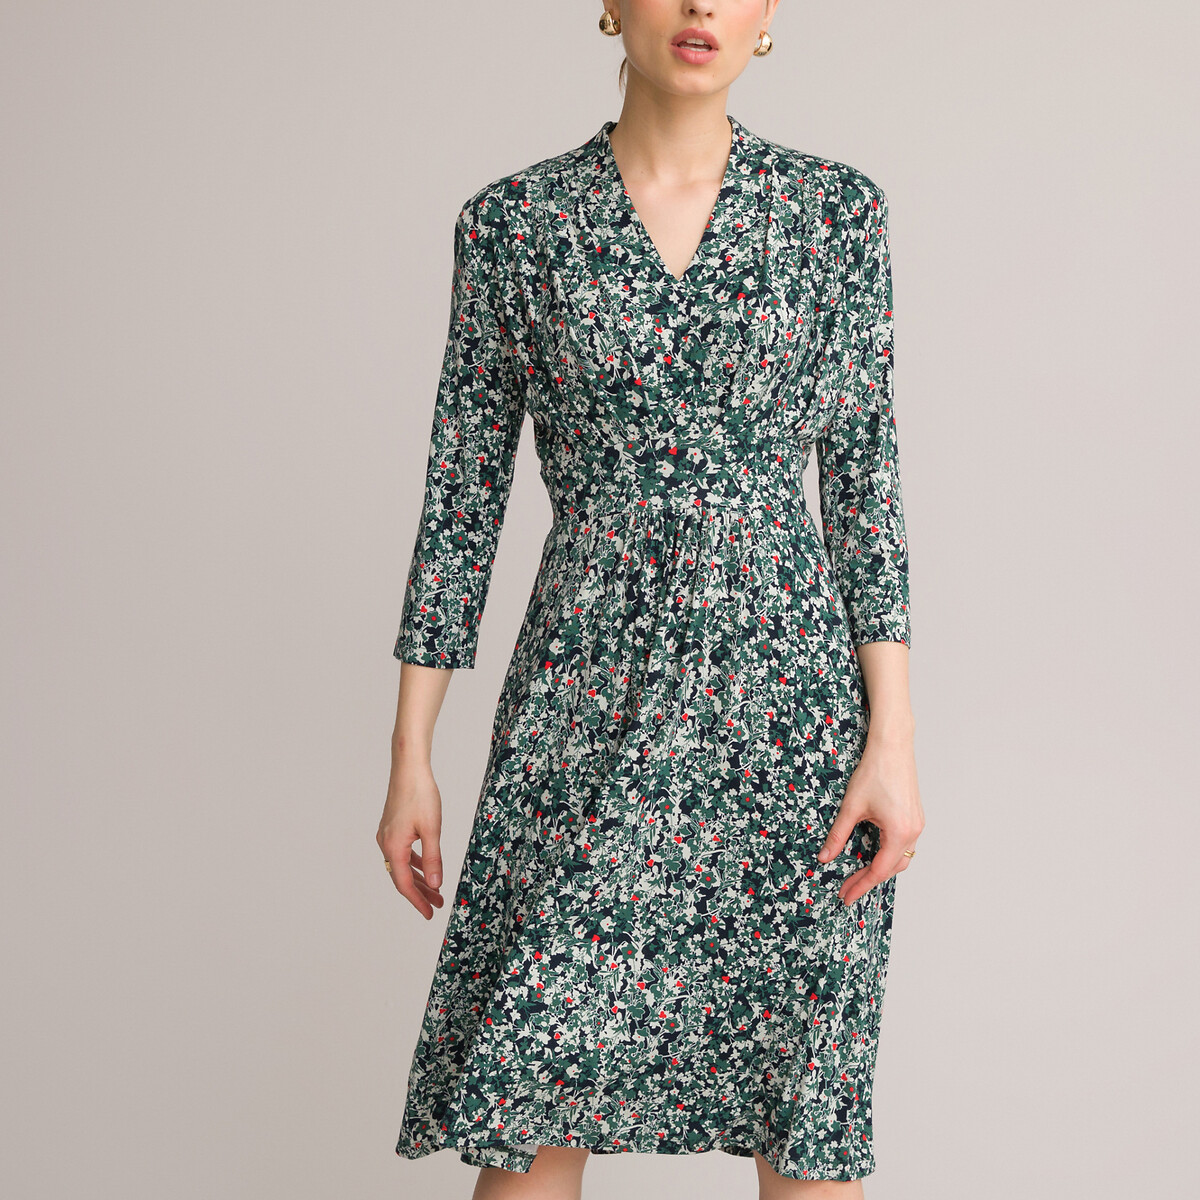 Платье-миди ANNE WEYBURN Платье-миди Расклешенное с цветочным принтом 48 зеленый, размер 48 - фото 2